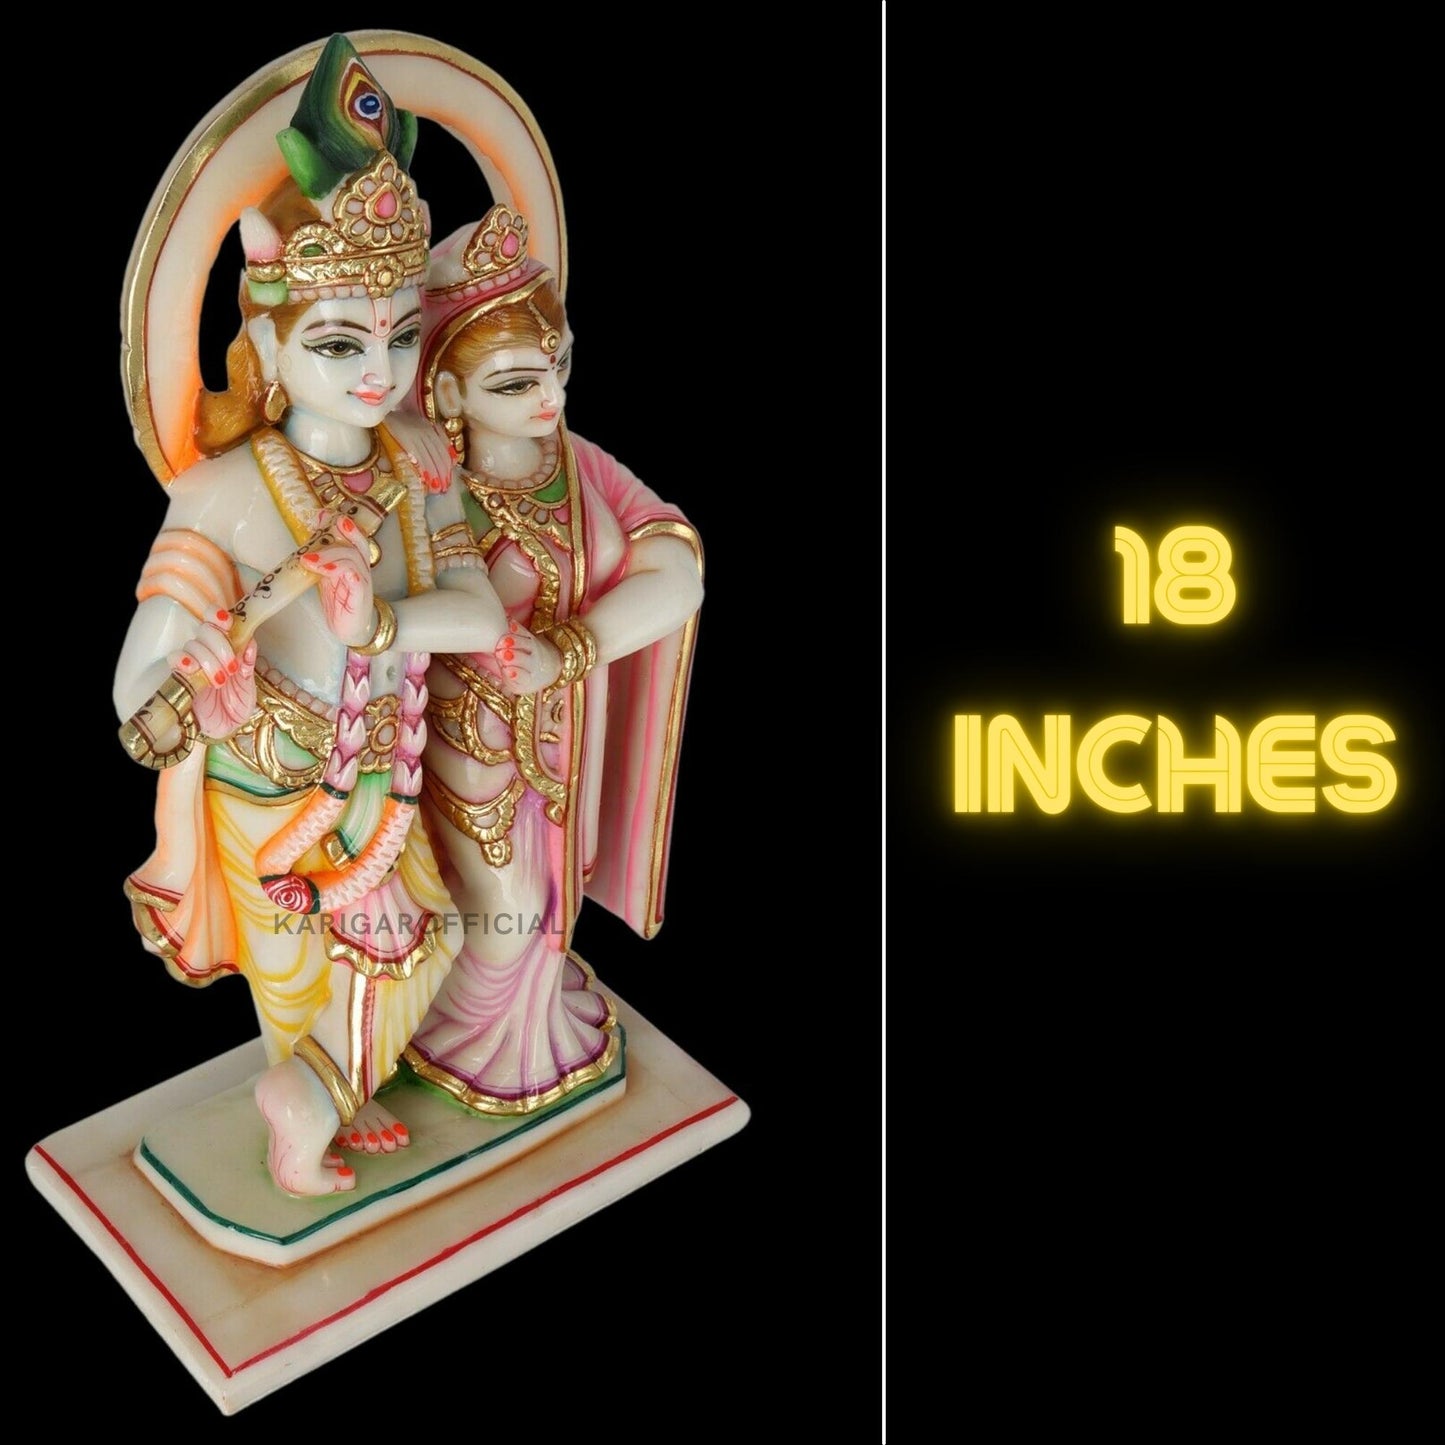 Estatua de Radha Krishna, figura de trabajo de hoja de oro, ídolo grande de Radha Krishna de mármol de 18 pulgadas, pareja divina hindú Murti pintada a mano, decoración de Pooja del templo del hogar, escultura de regalos de inauguración de la casa